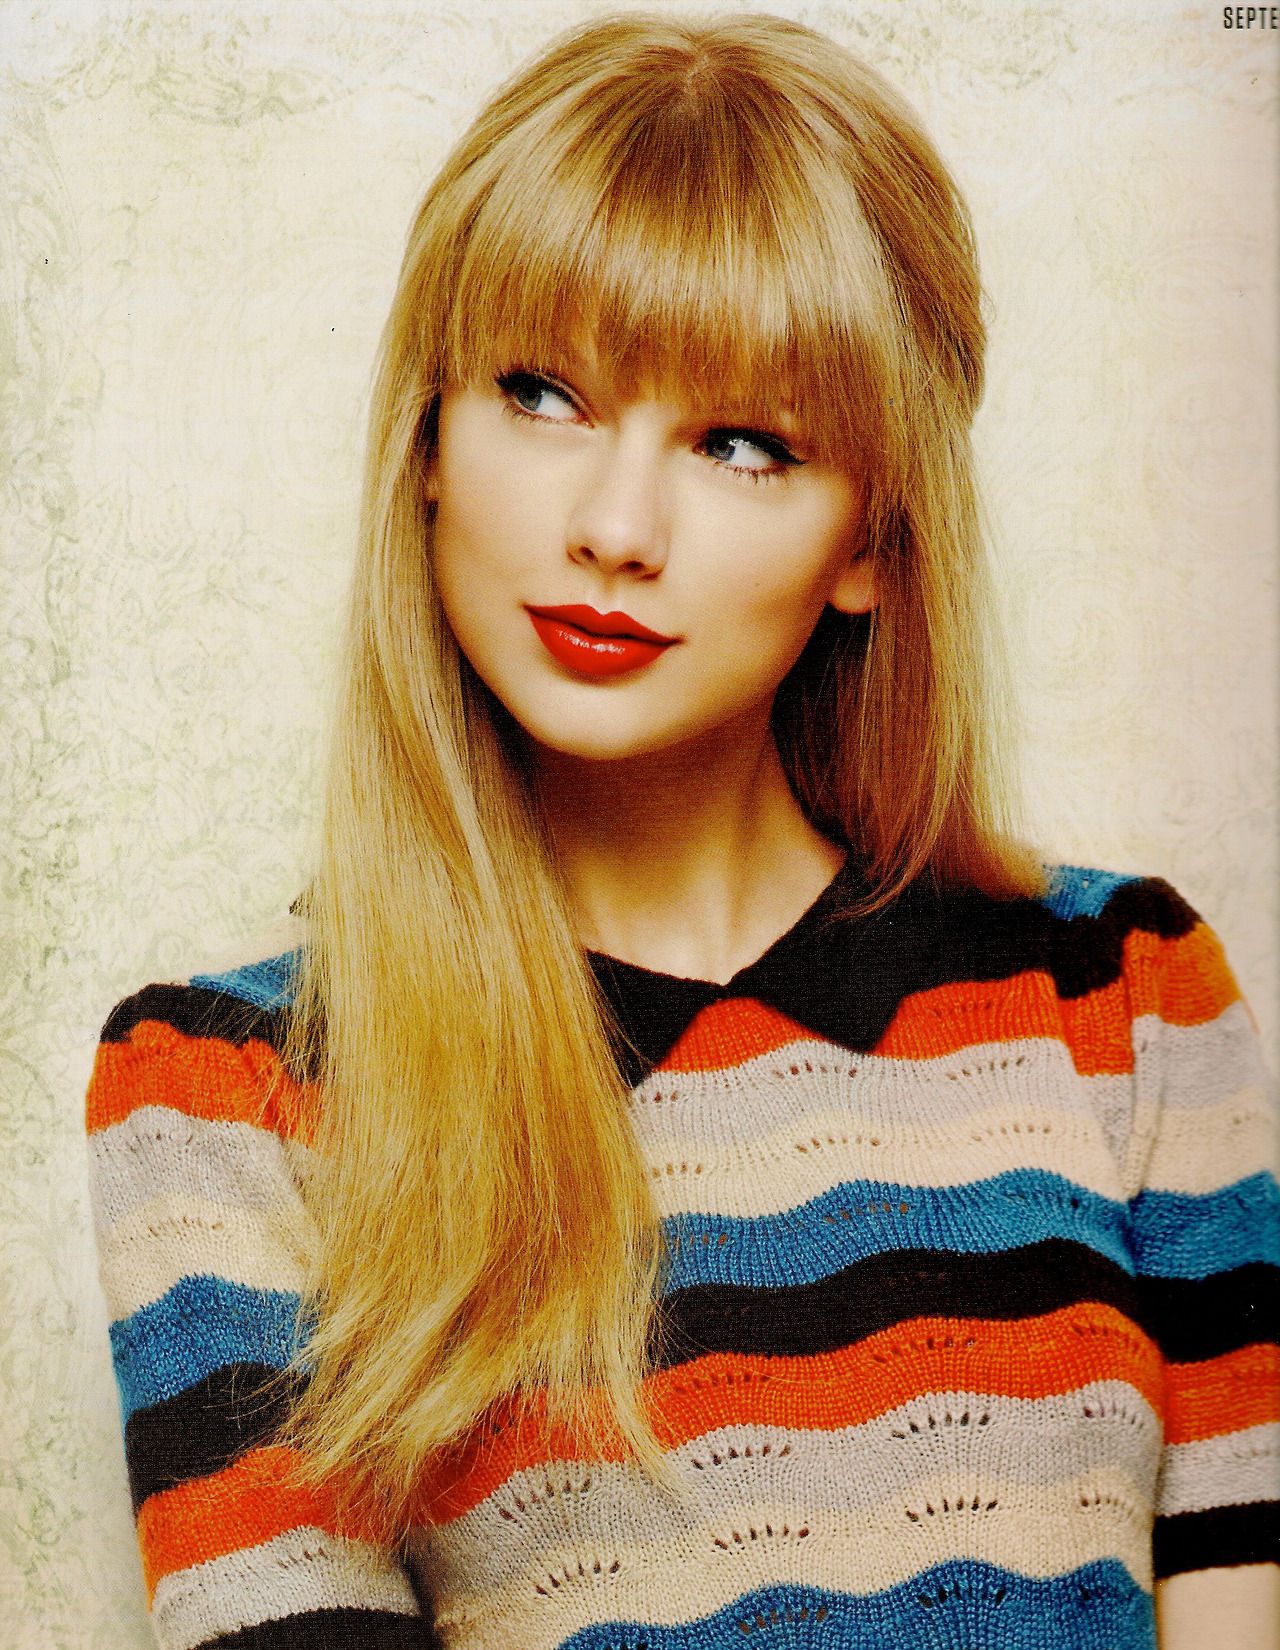 Taylor Swift Official 2015 Calendar